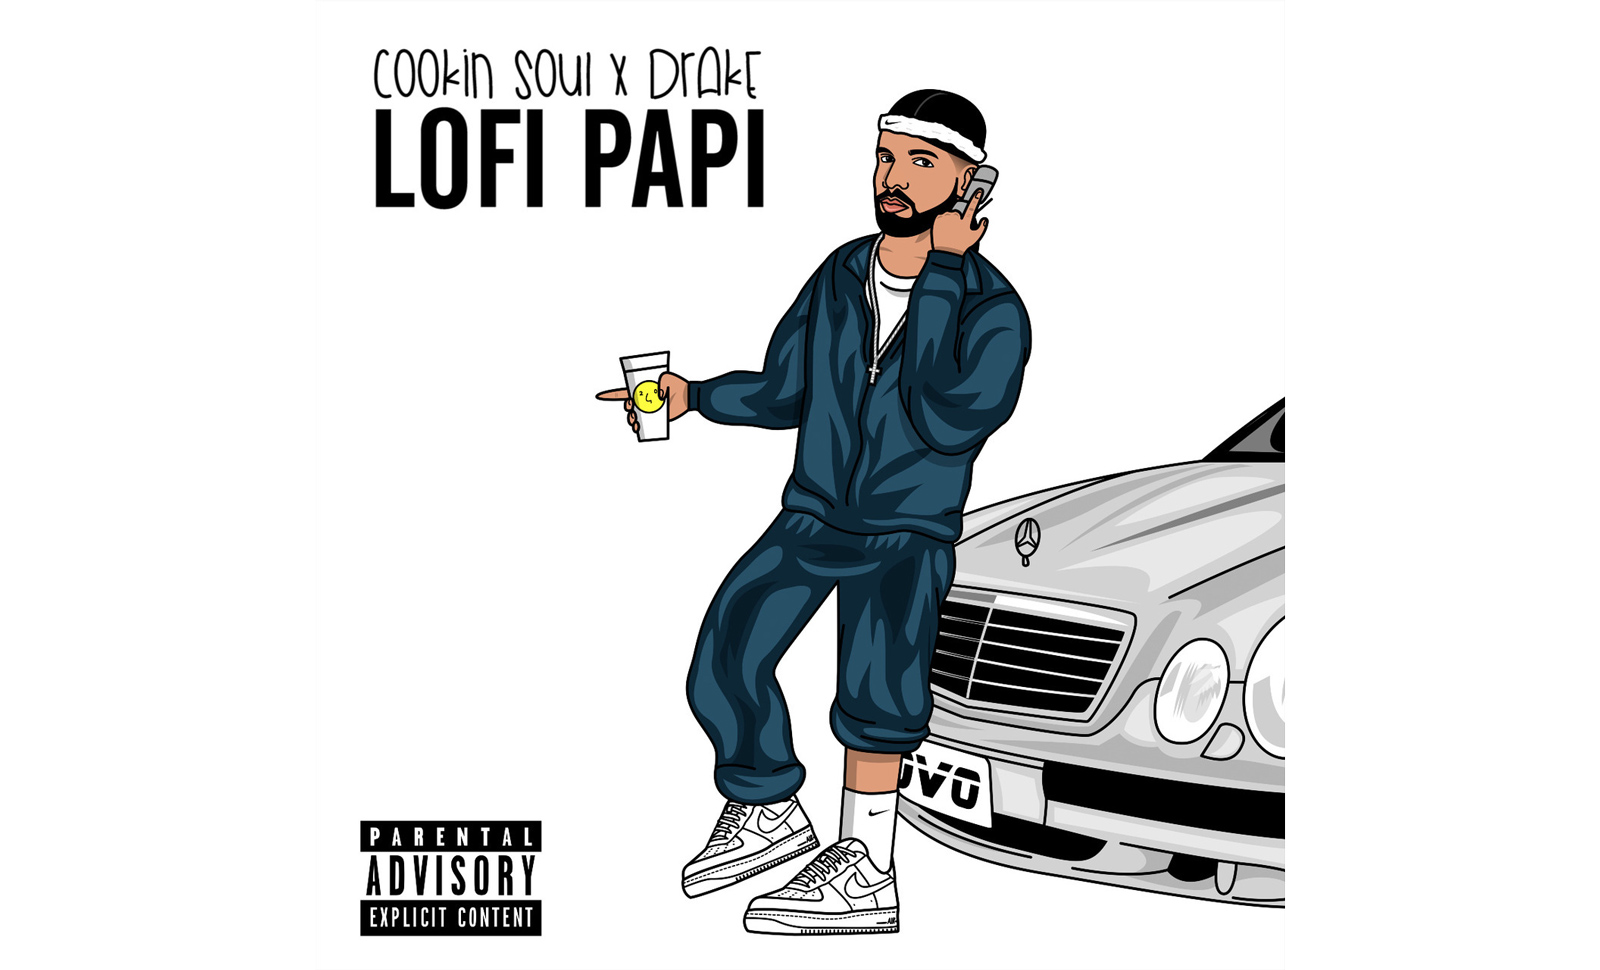 lofi papi drake cookin soul remixes